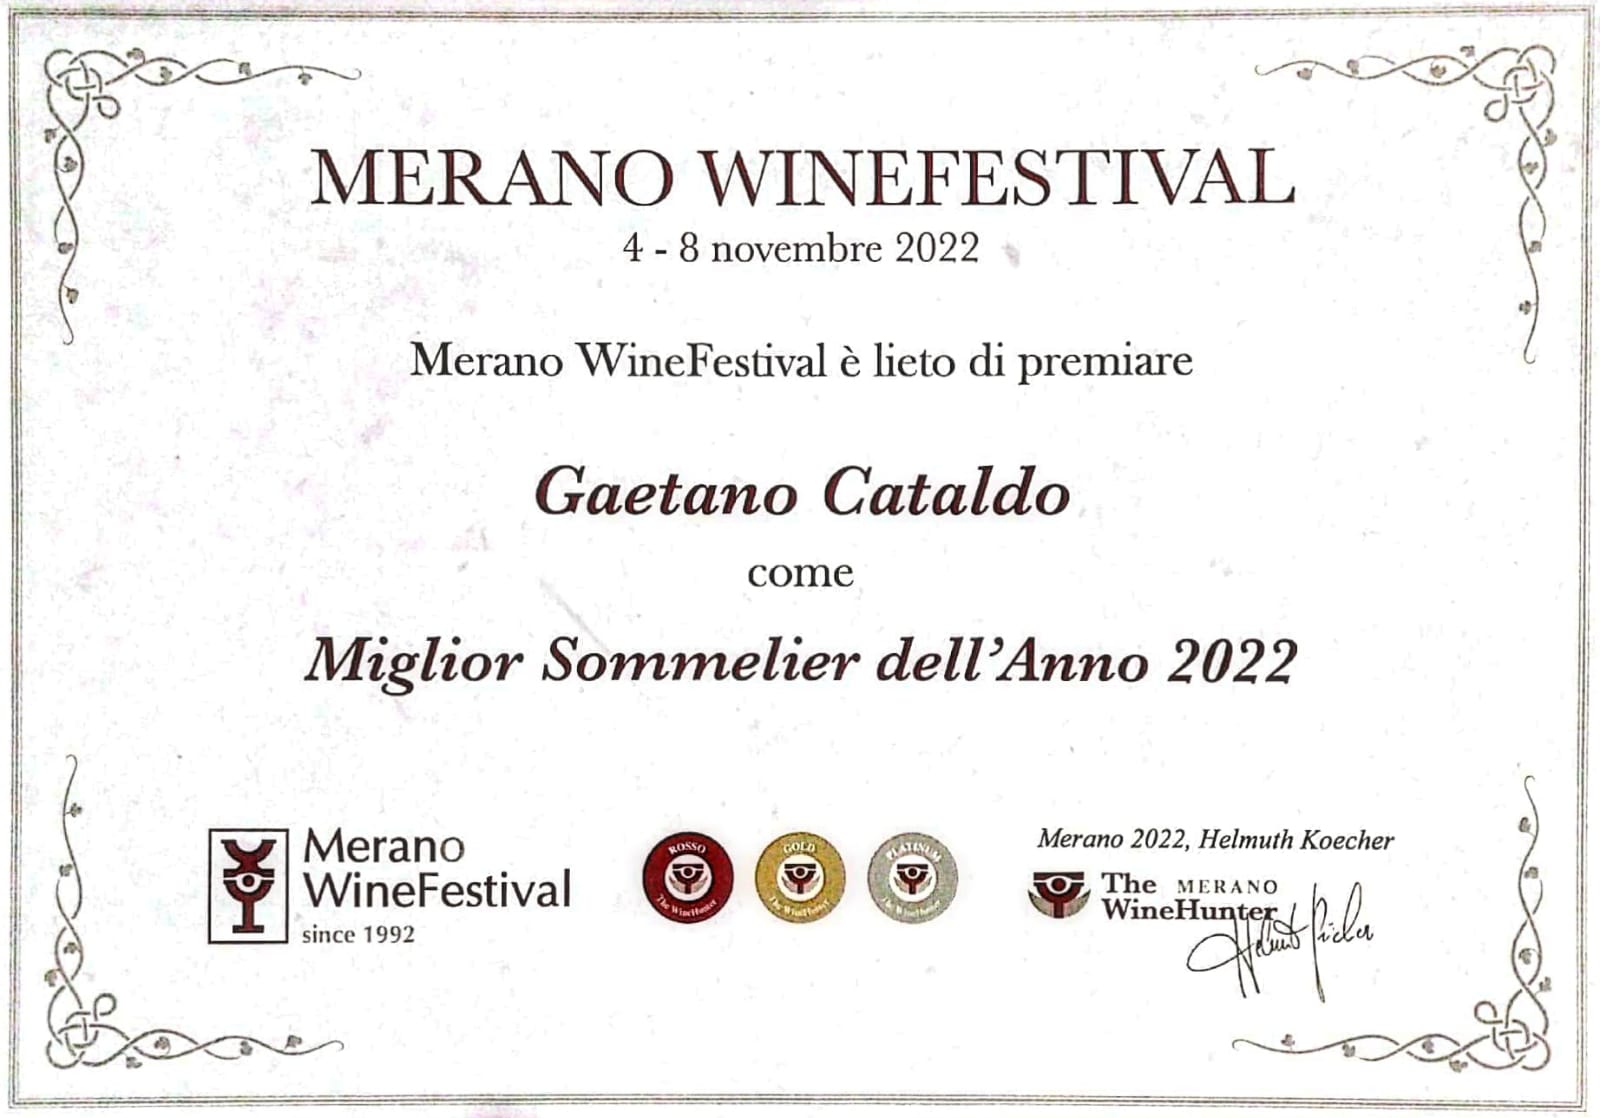 Miglior Sommelier anno 2022 Gaetano Cataldo premiato dal Merano WineFestival, foto da comunicato stampa